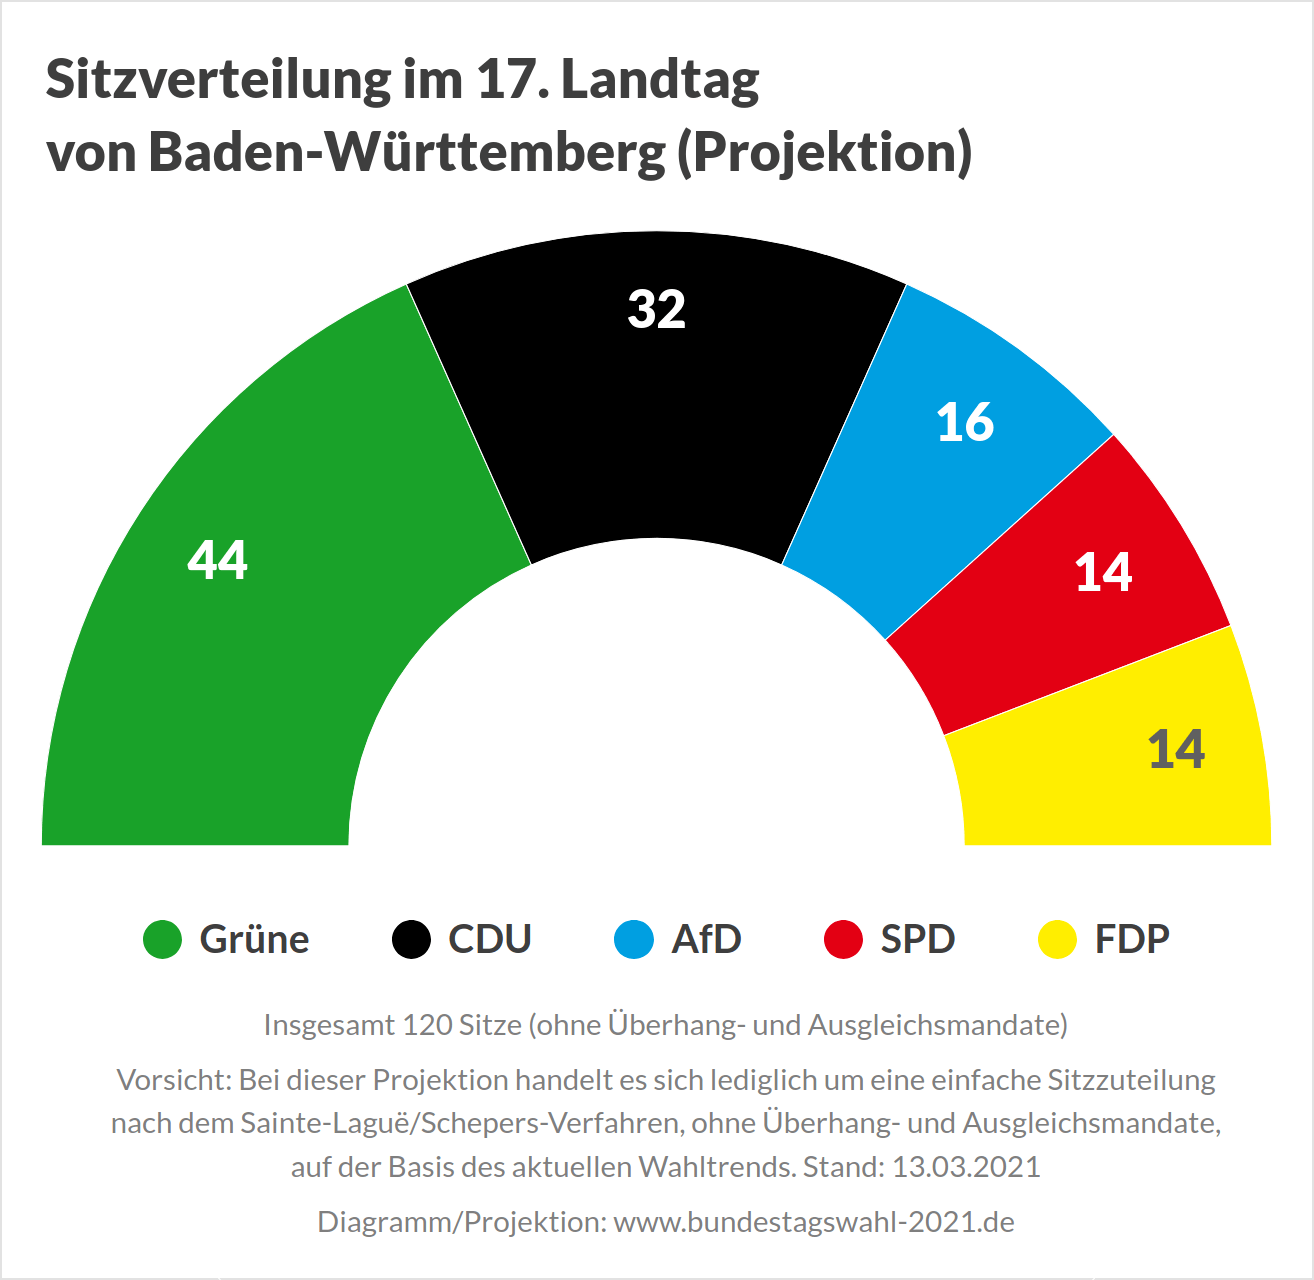 Sitzverteilung im 17. Landtag von Baden-Württemberg nach der Landtagswahl 2021 (Projektion)